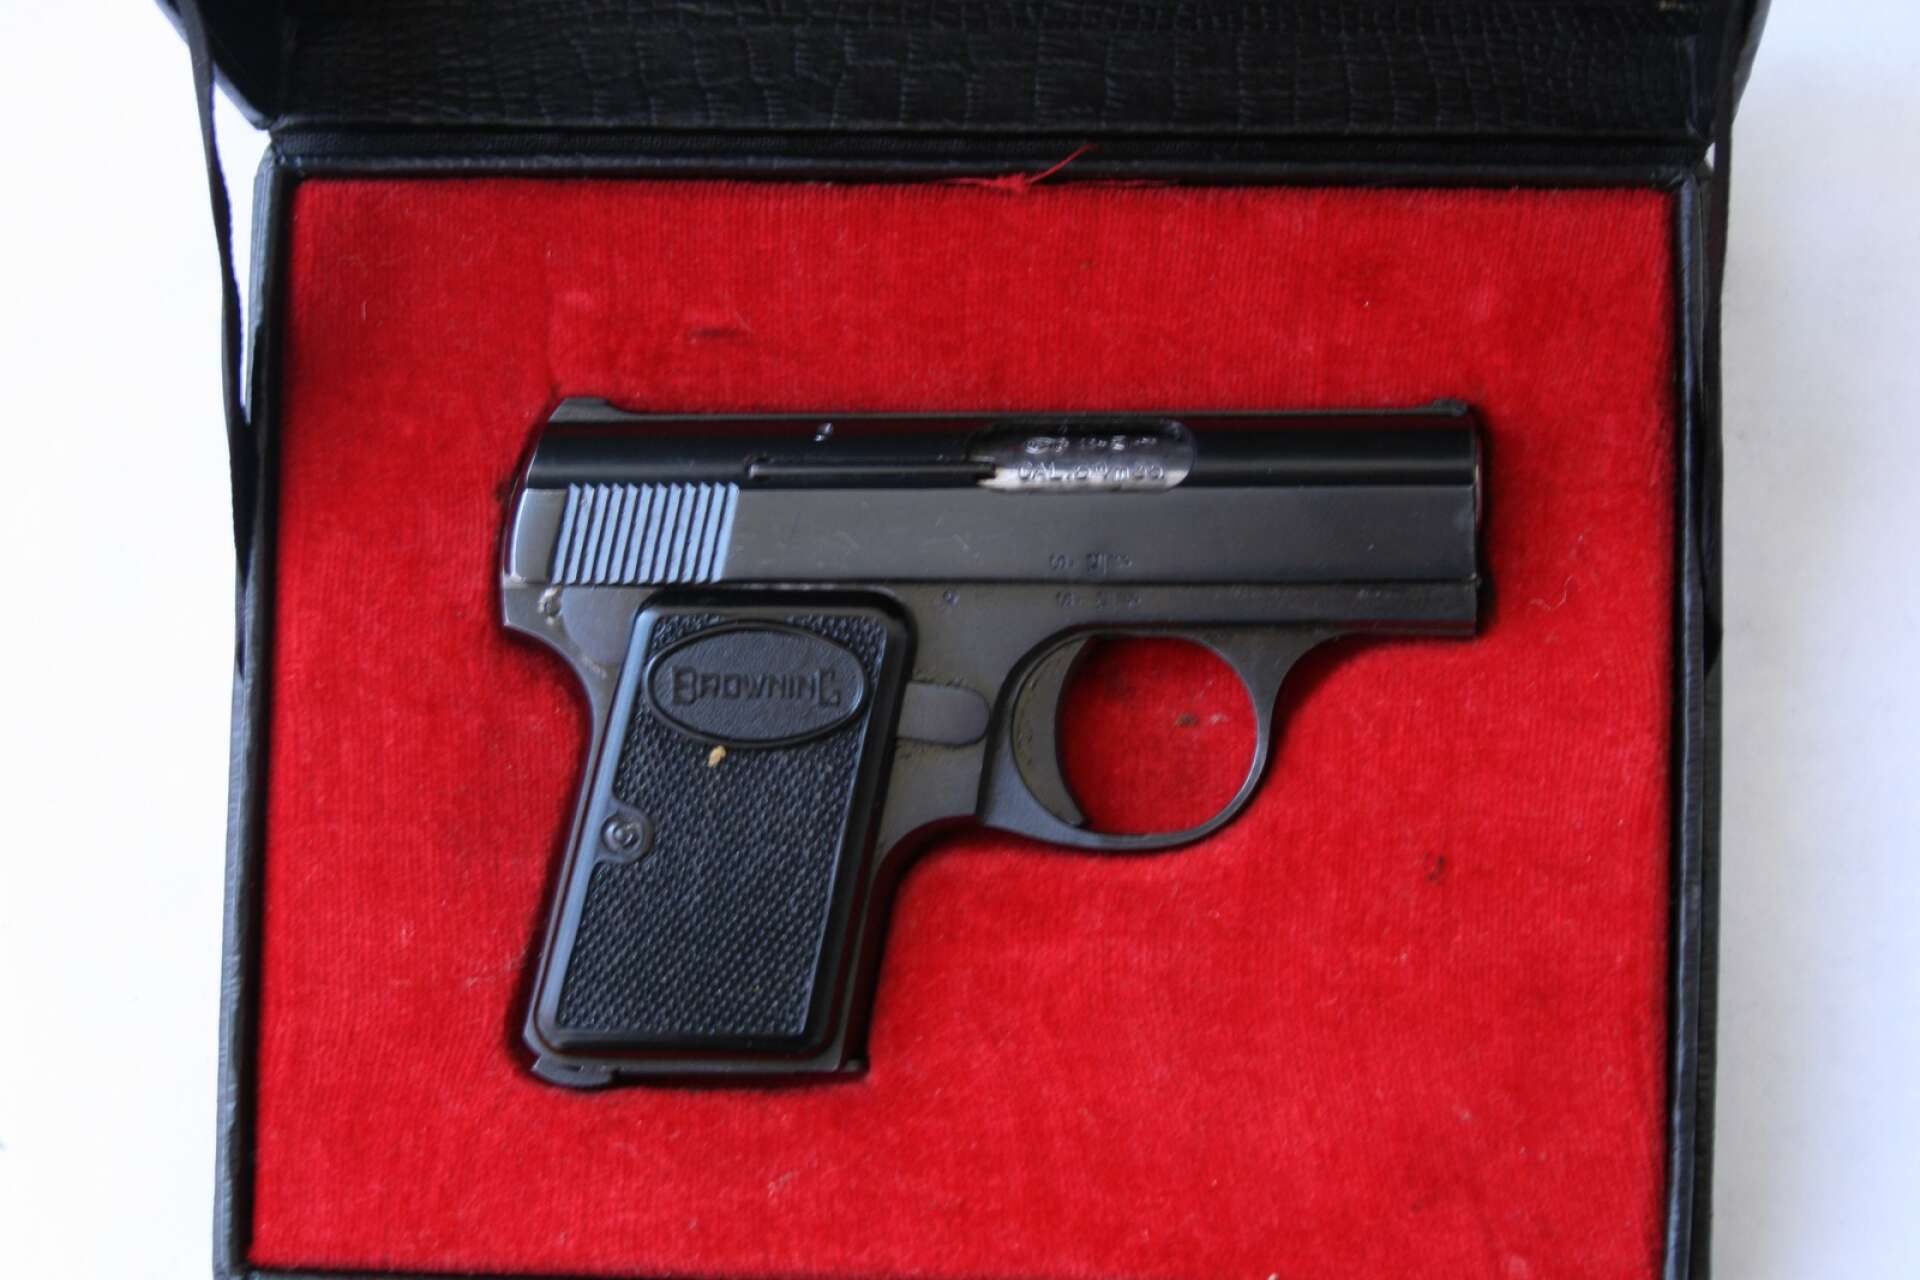 Det var en belgisktillverkad pistol av denna modell som polis hittade i Åmål. 